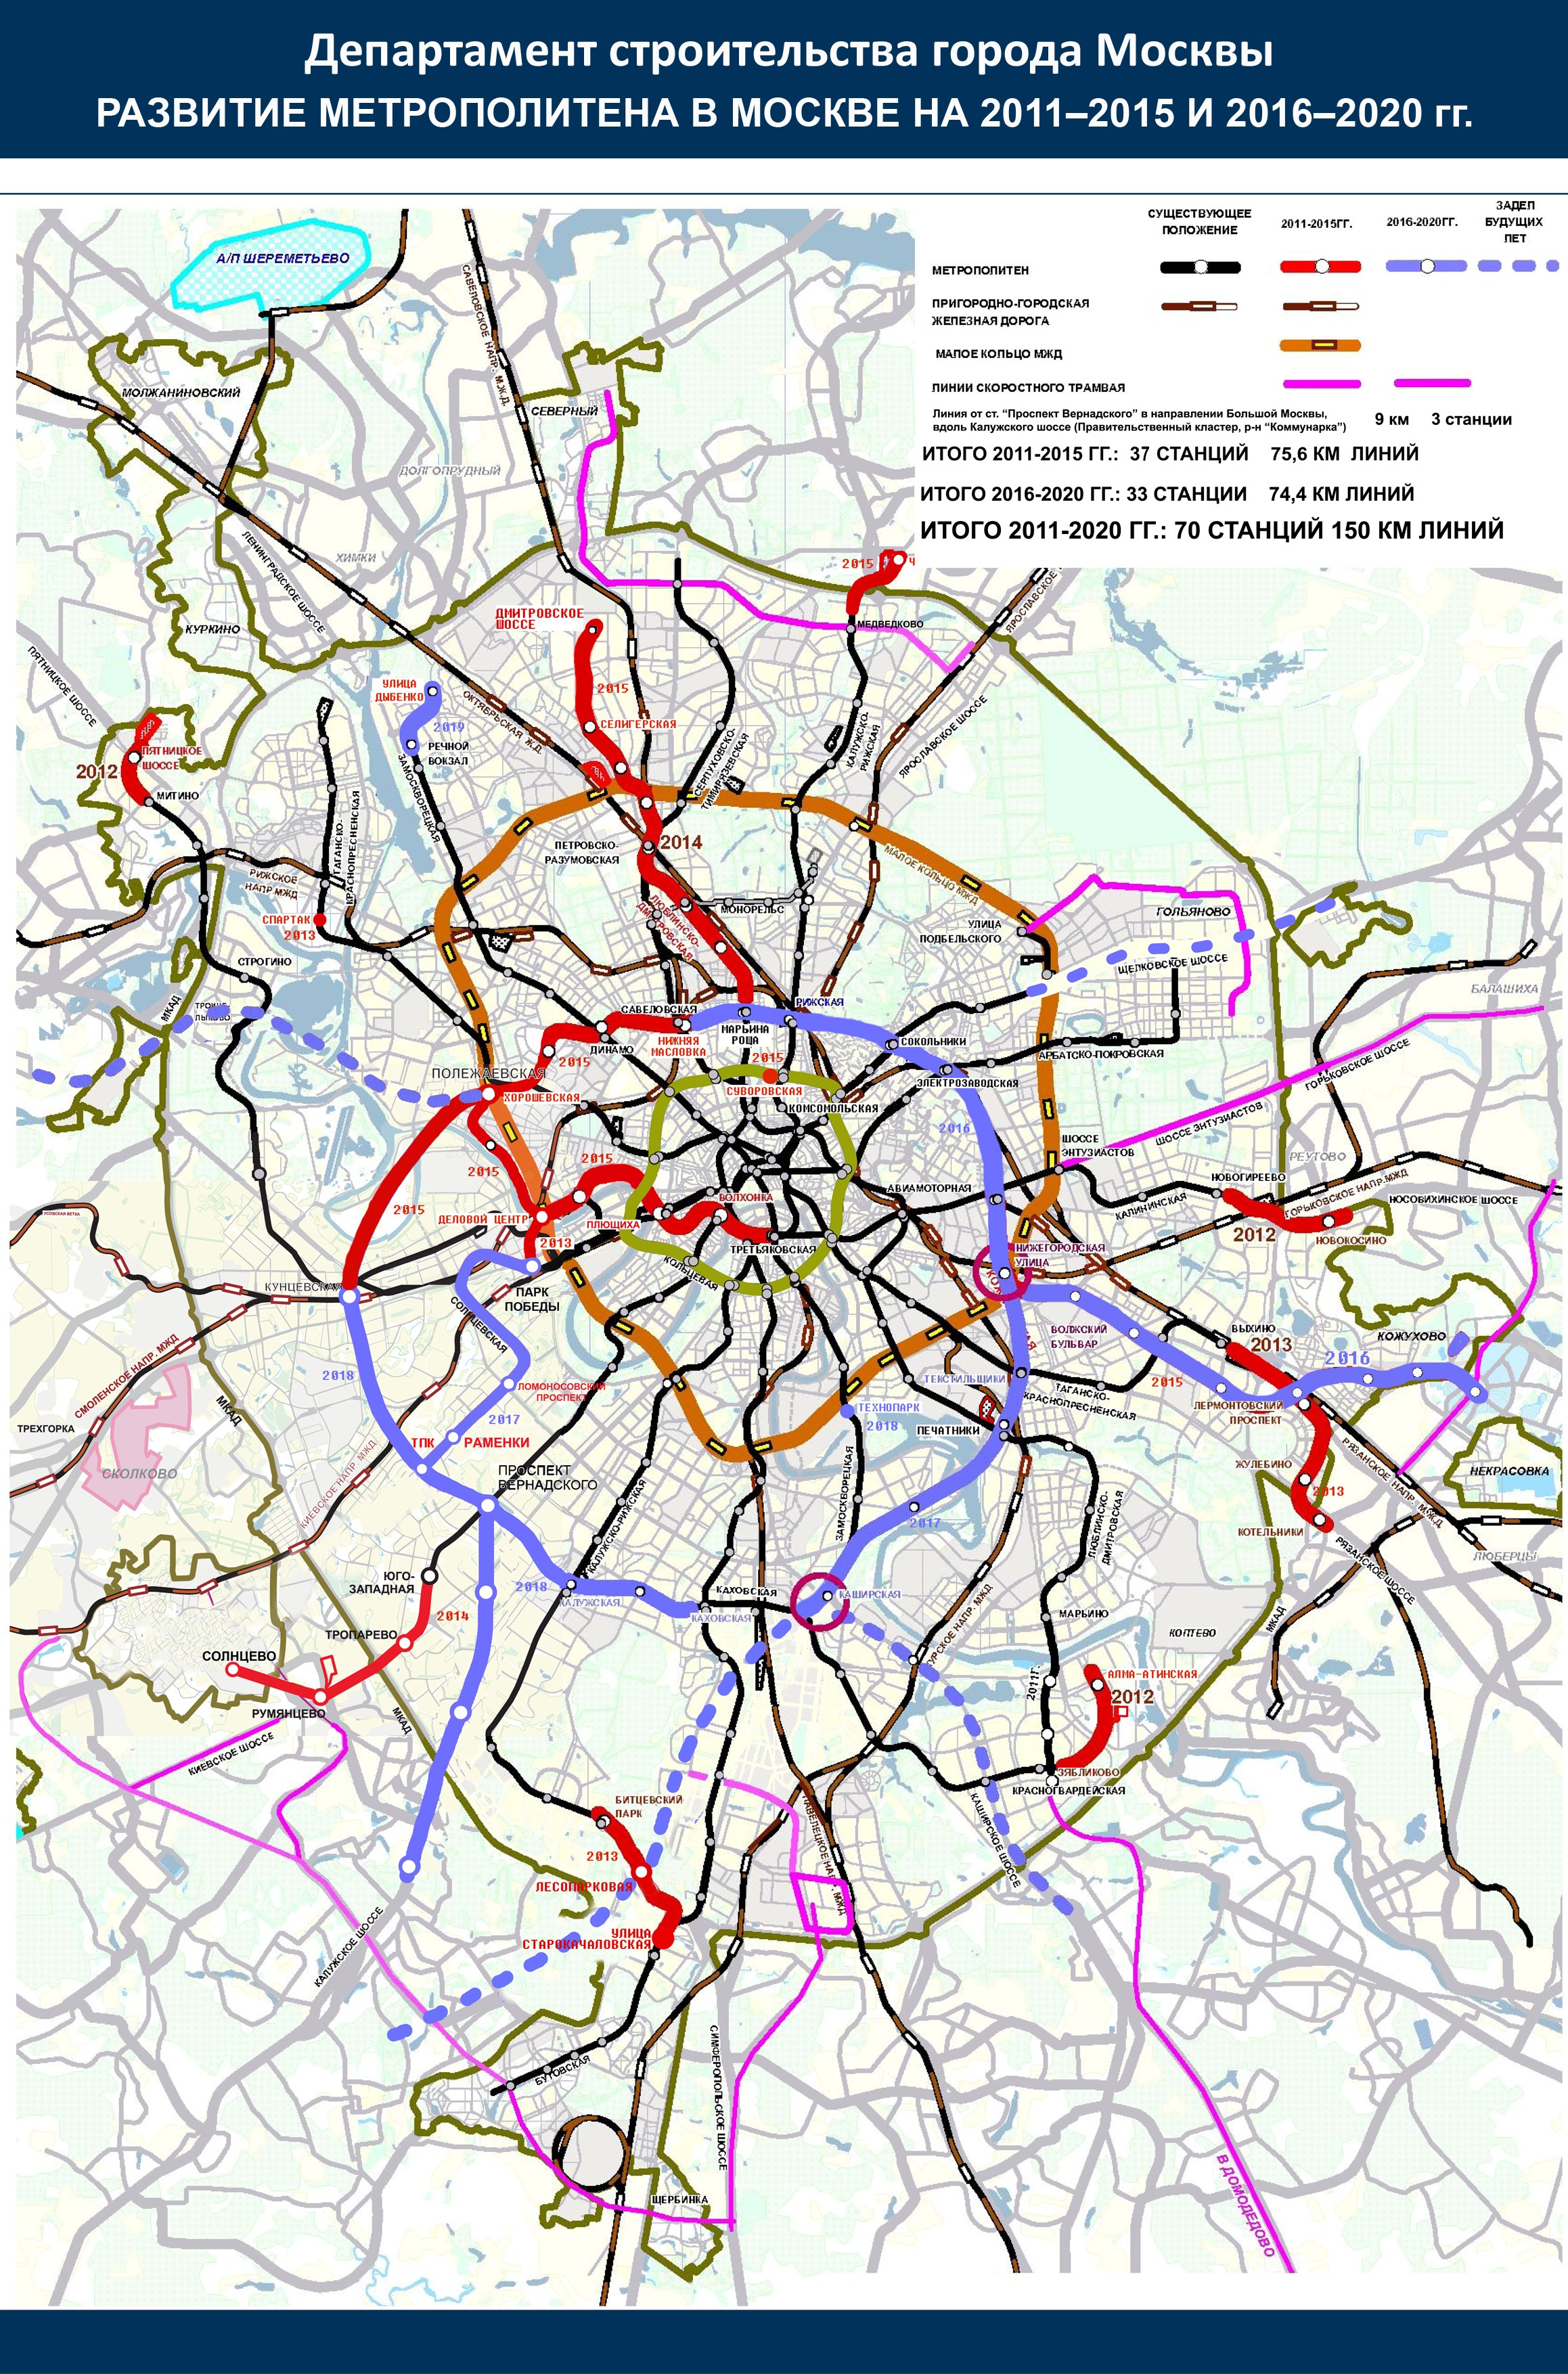 В Москве построят почти два десятка станций метро. Когда это произойдет